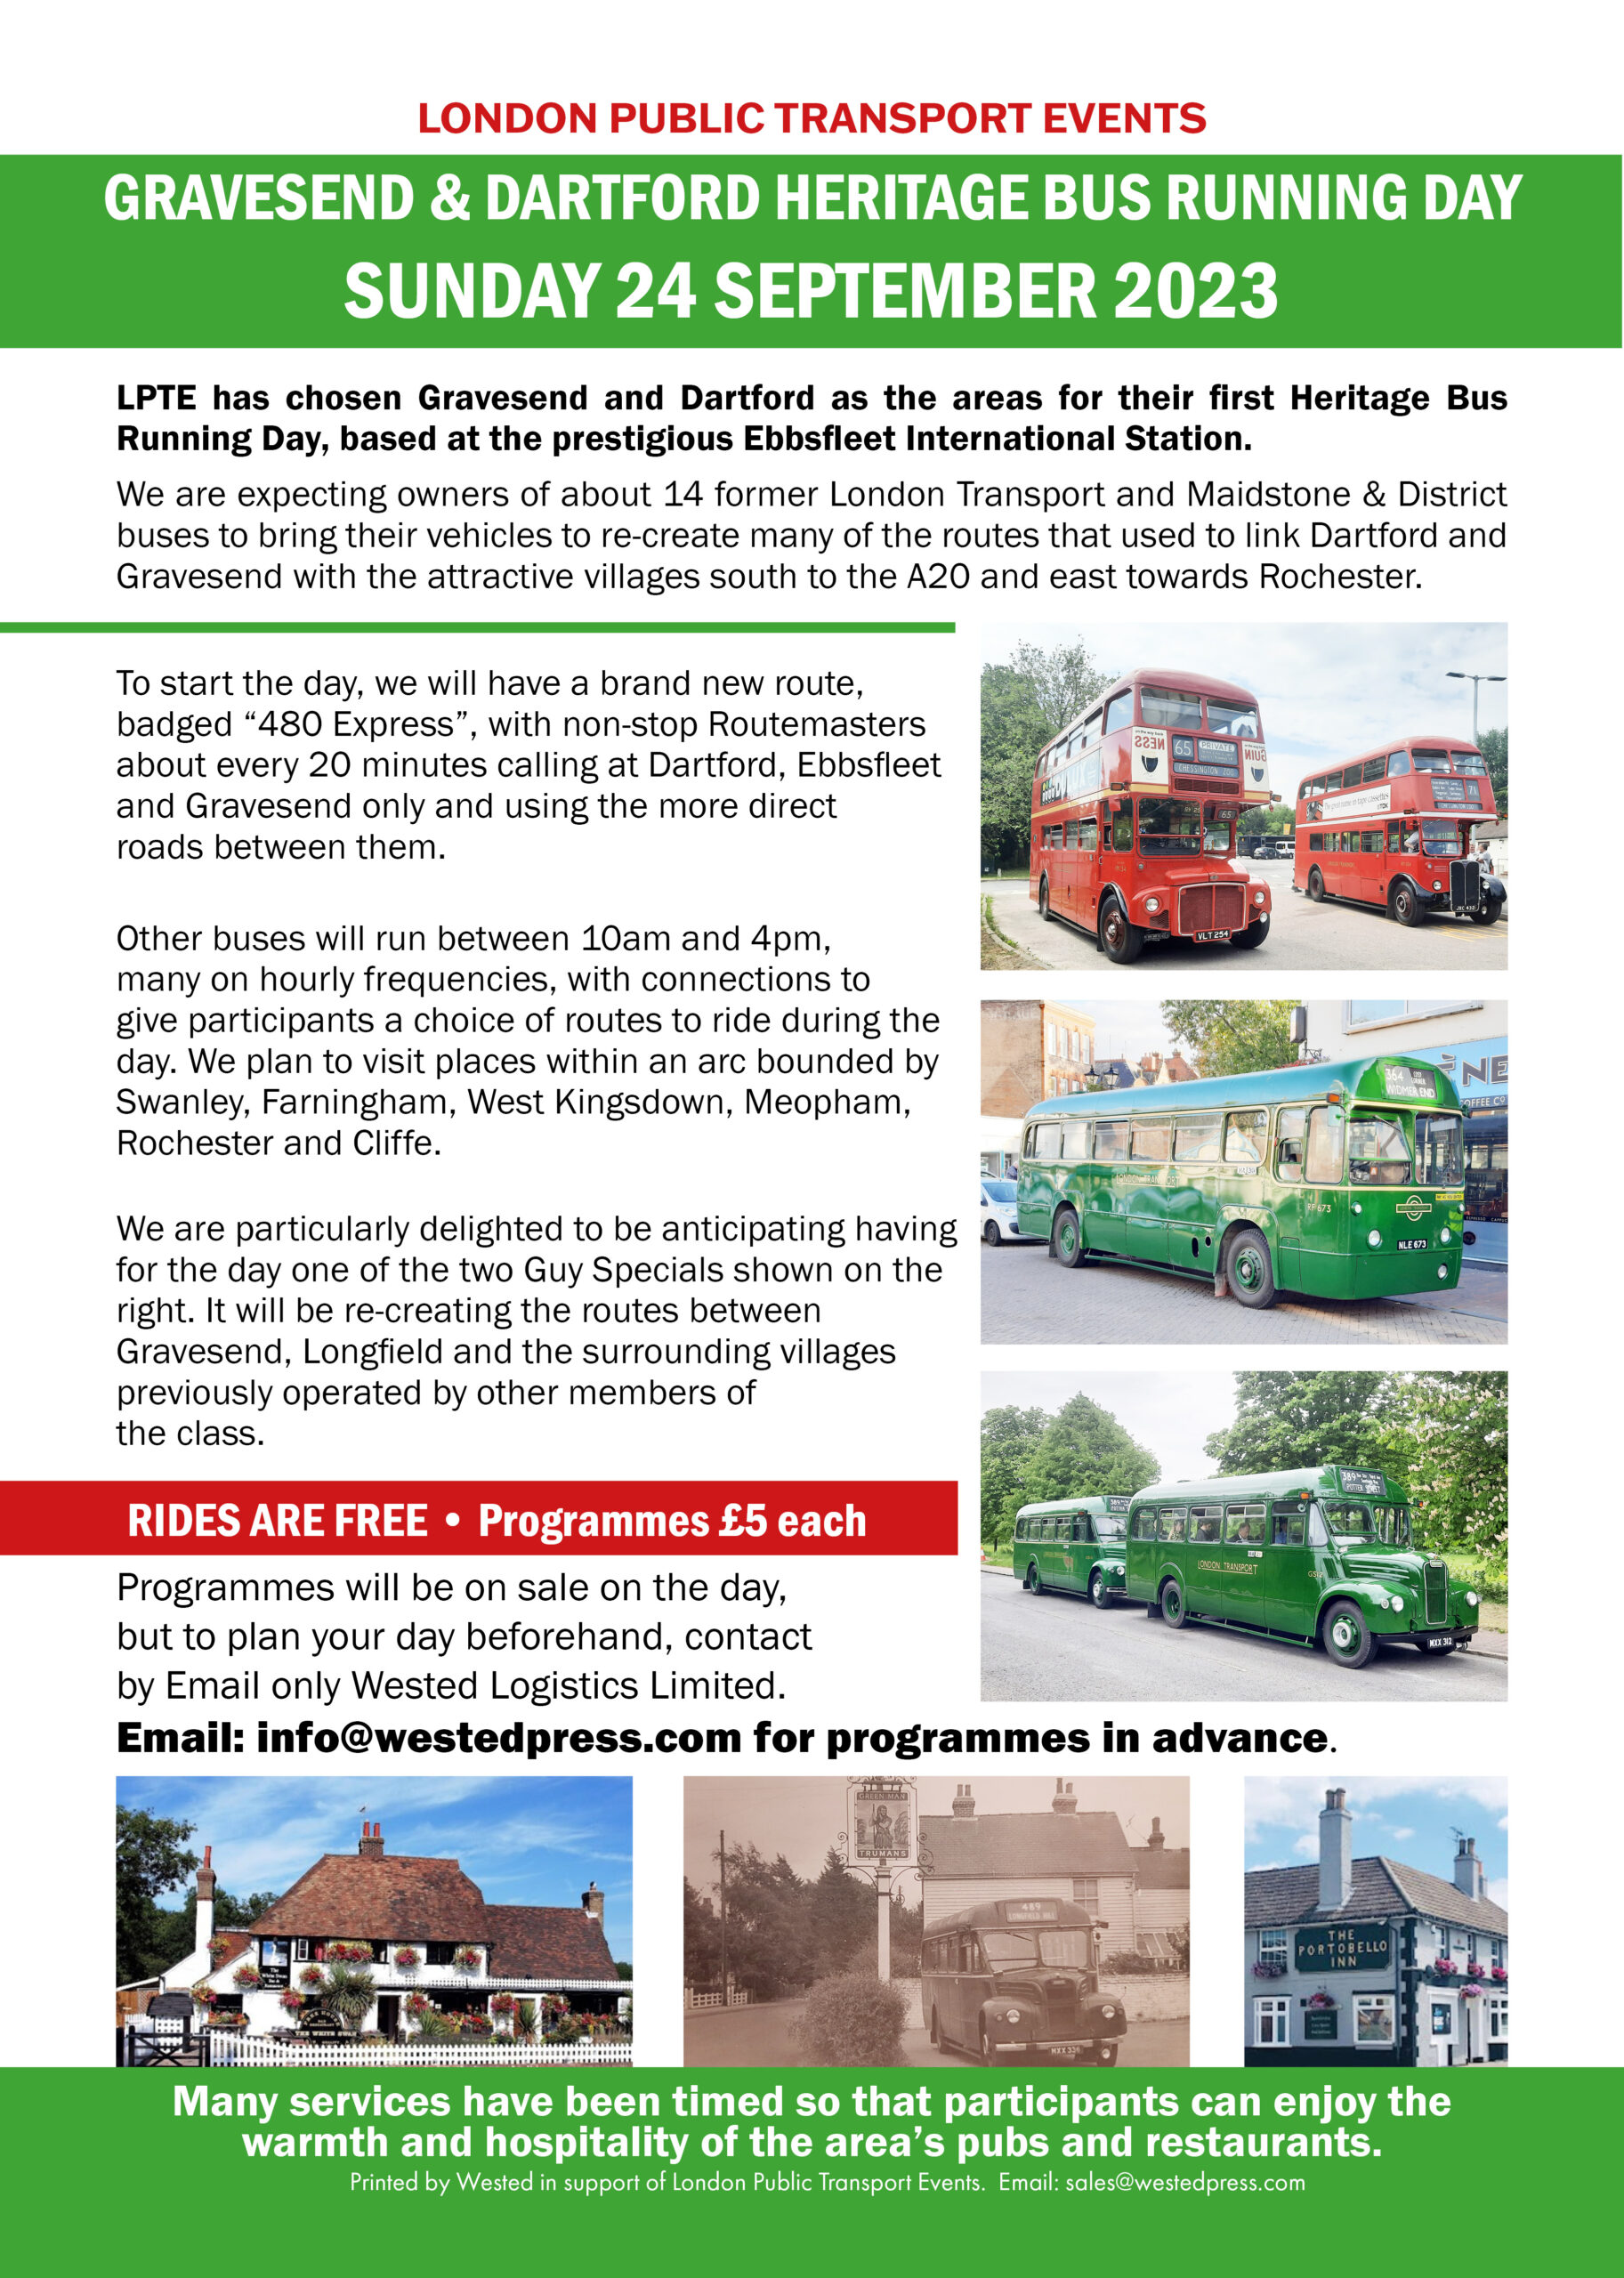 Gravesend & Dartford Heritage Bus Running Day